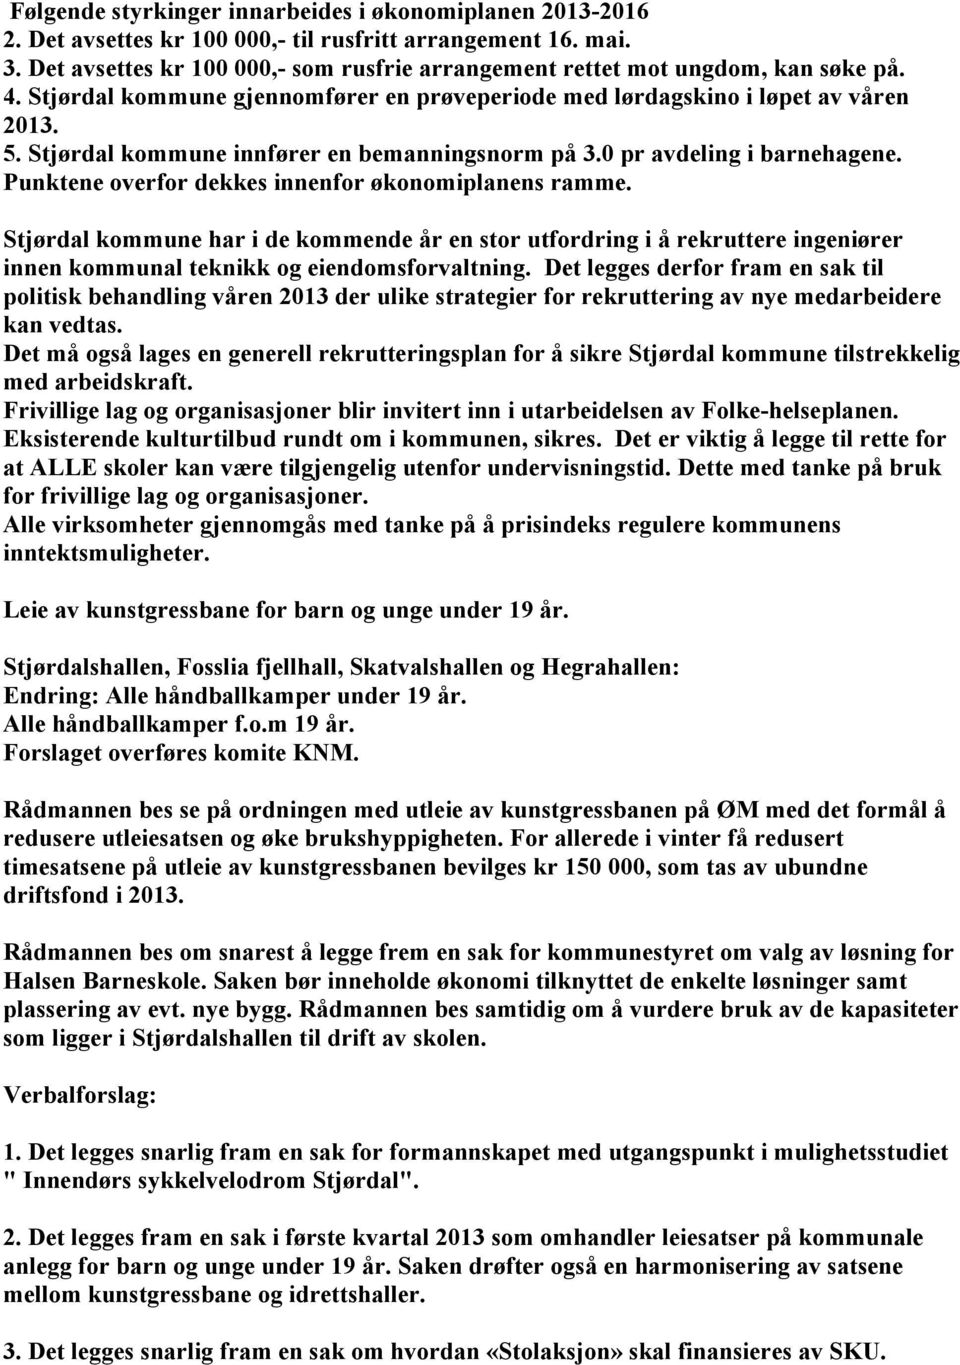 Stjørdal kommune innfører en bemanningsnorm på 3.0 pr avdeling i barnehagene. Punktene overfor dekkes innenfor økonomiplanens ramme.